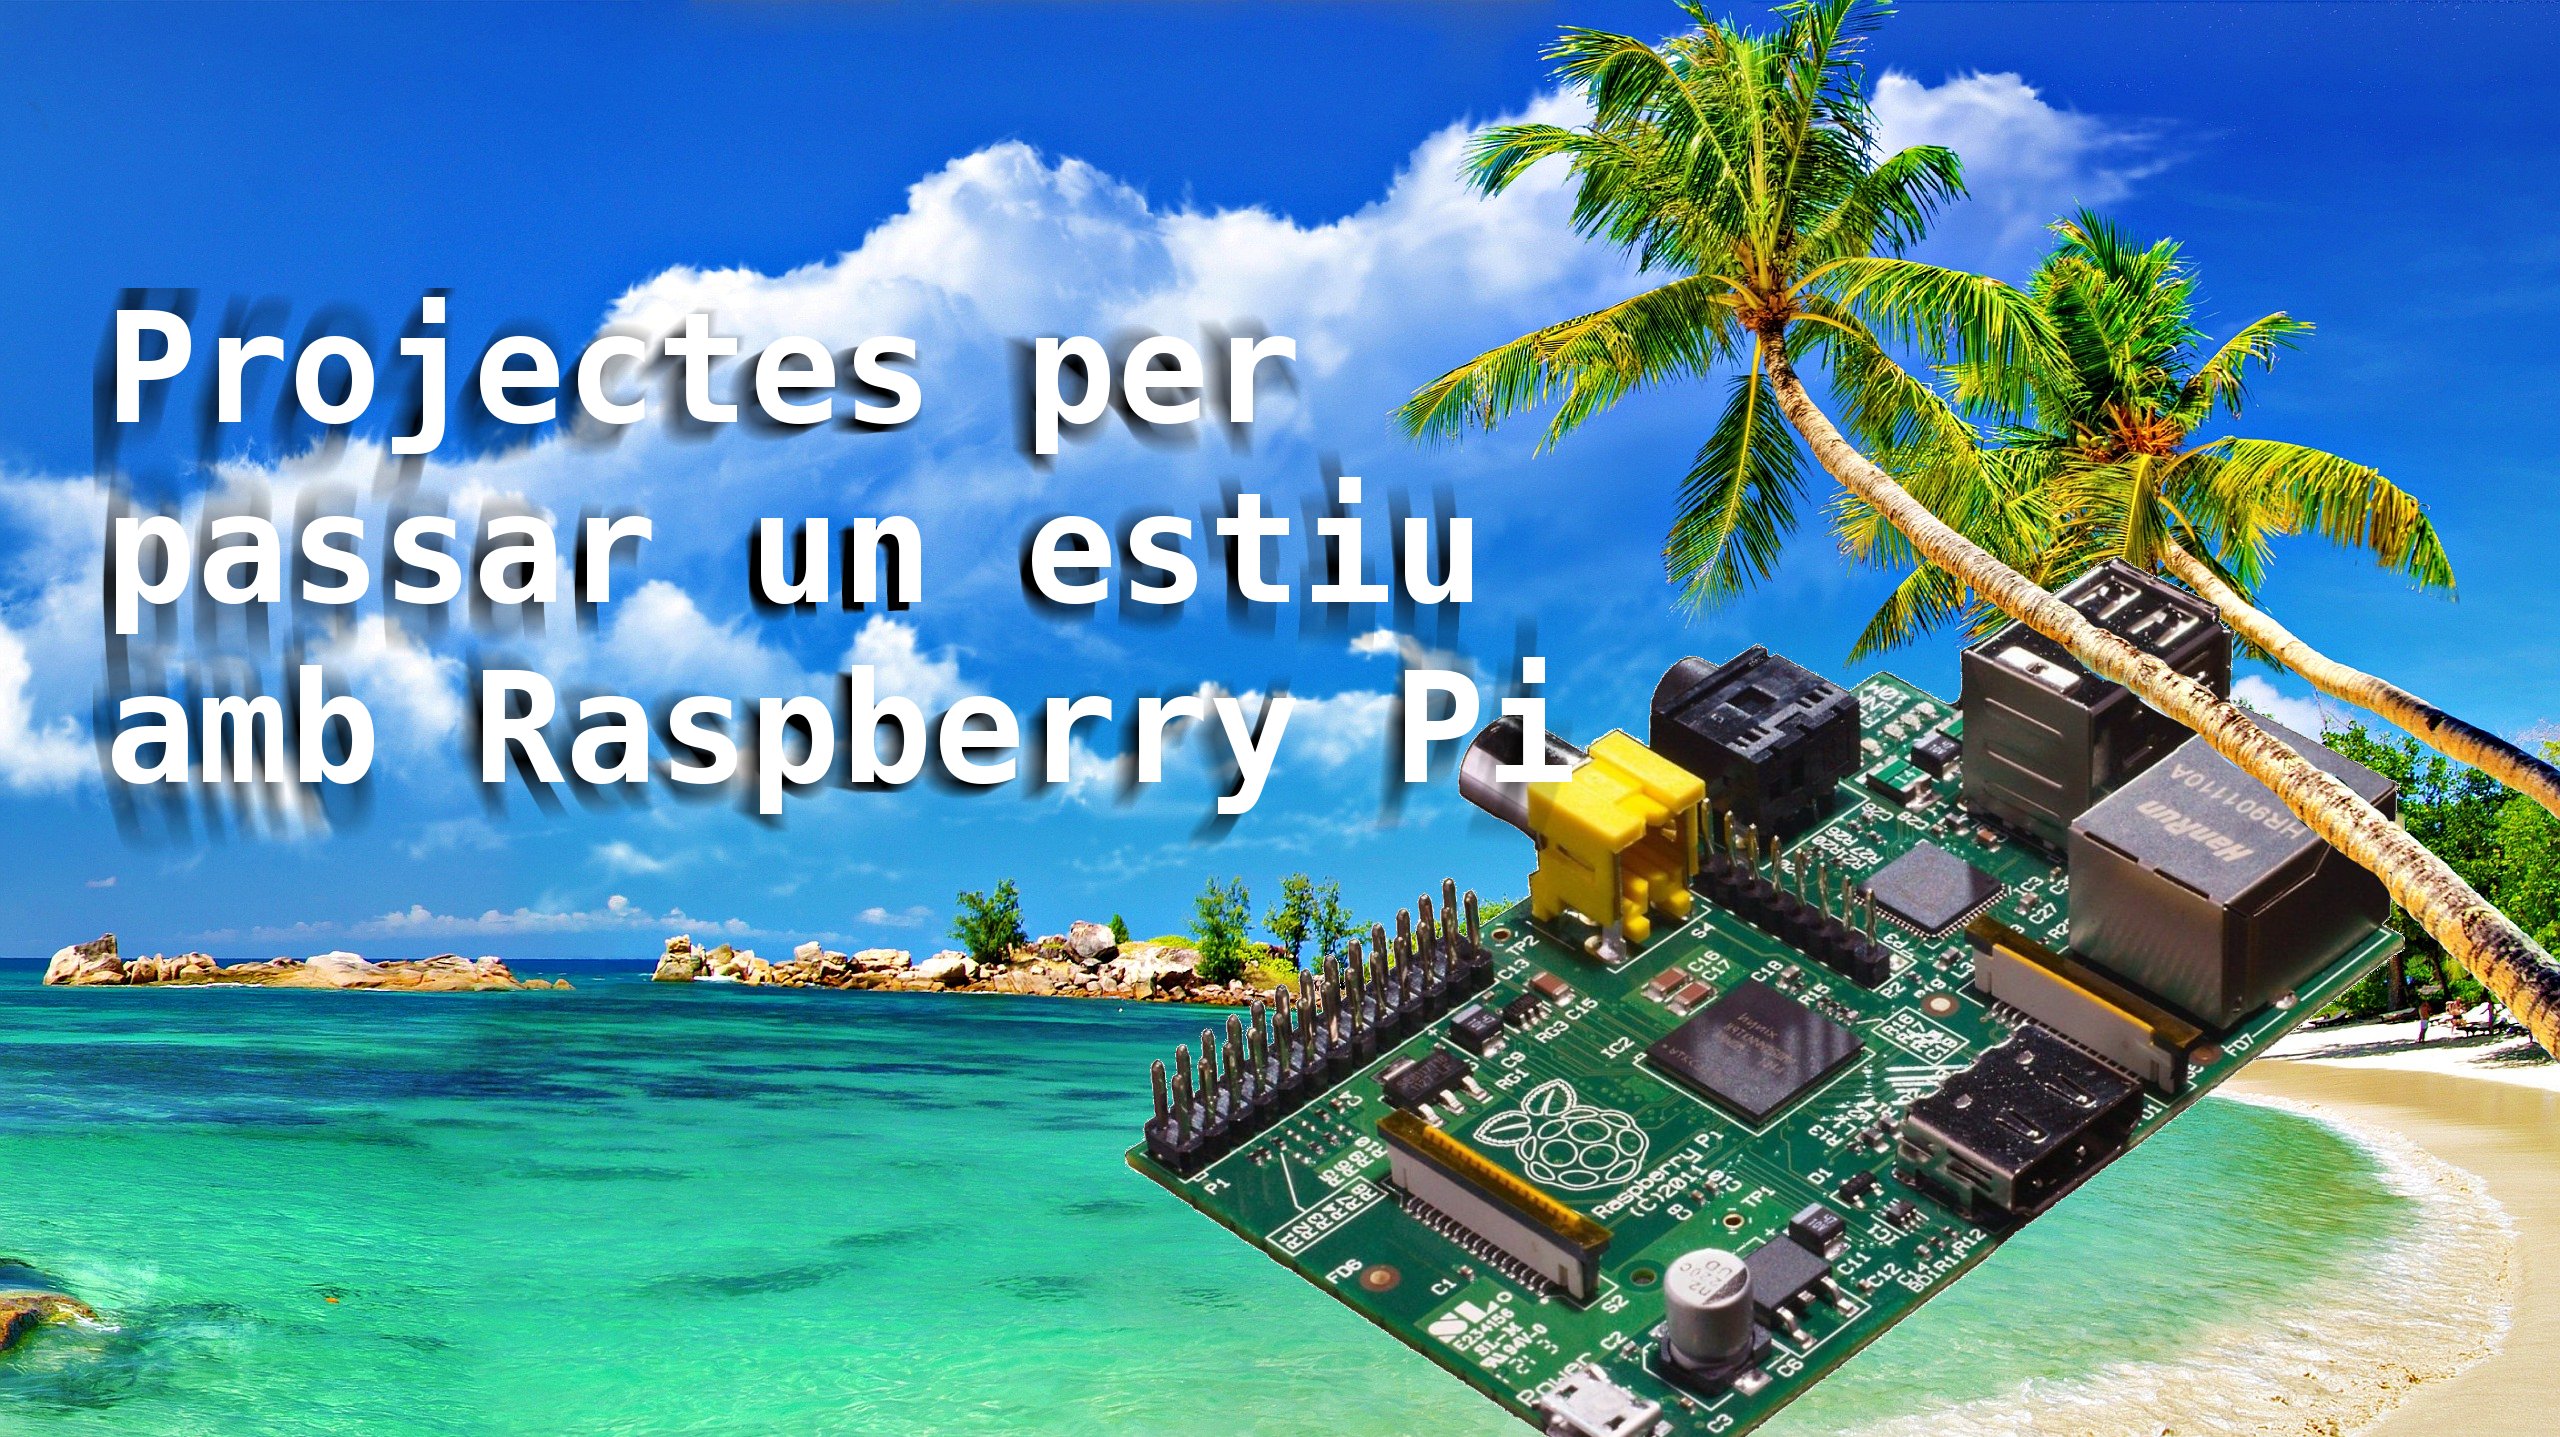 Diversos i interessants projectes amb Raspberry Pi